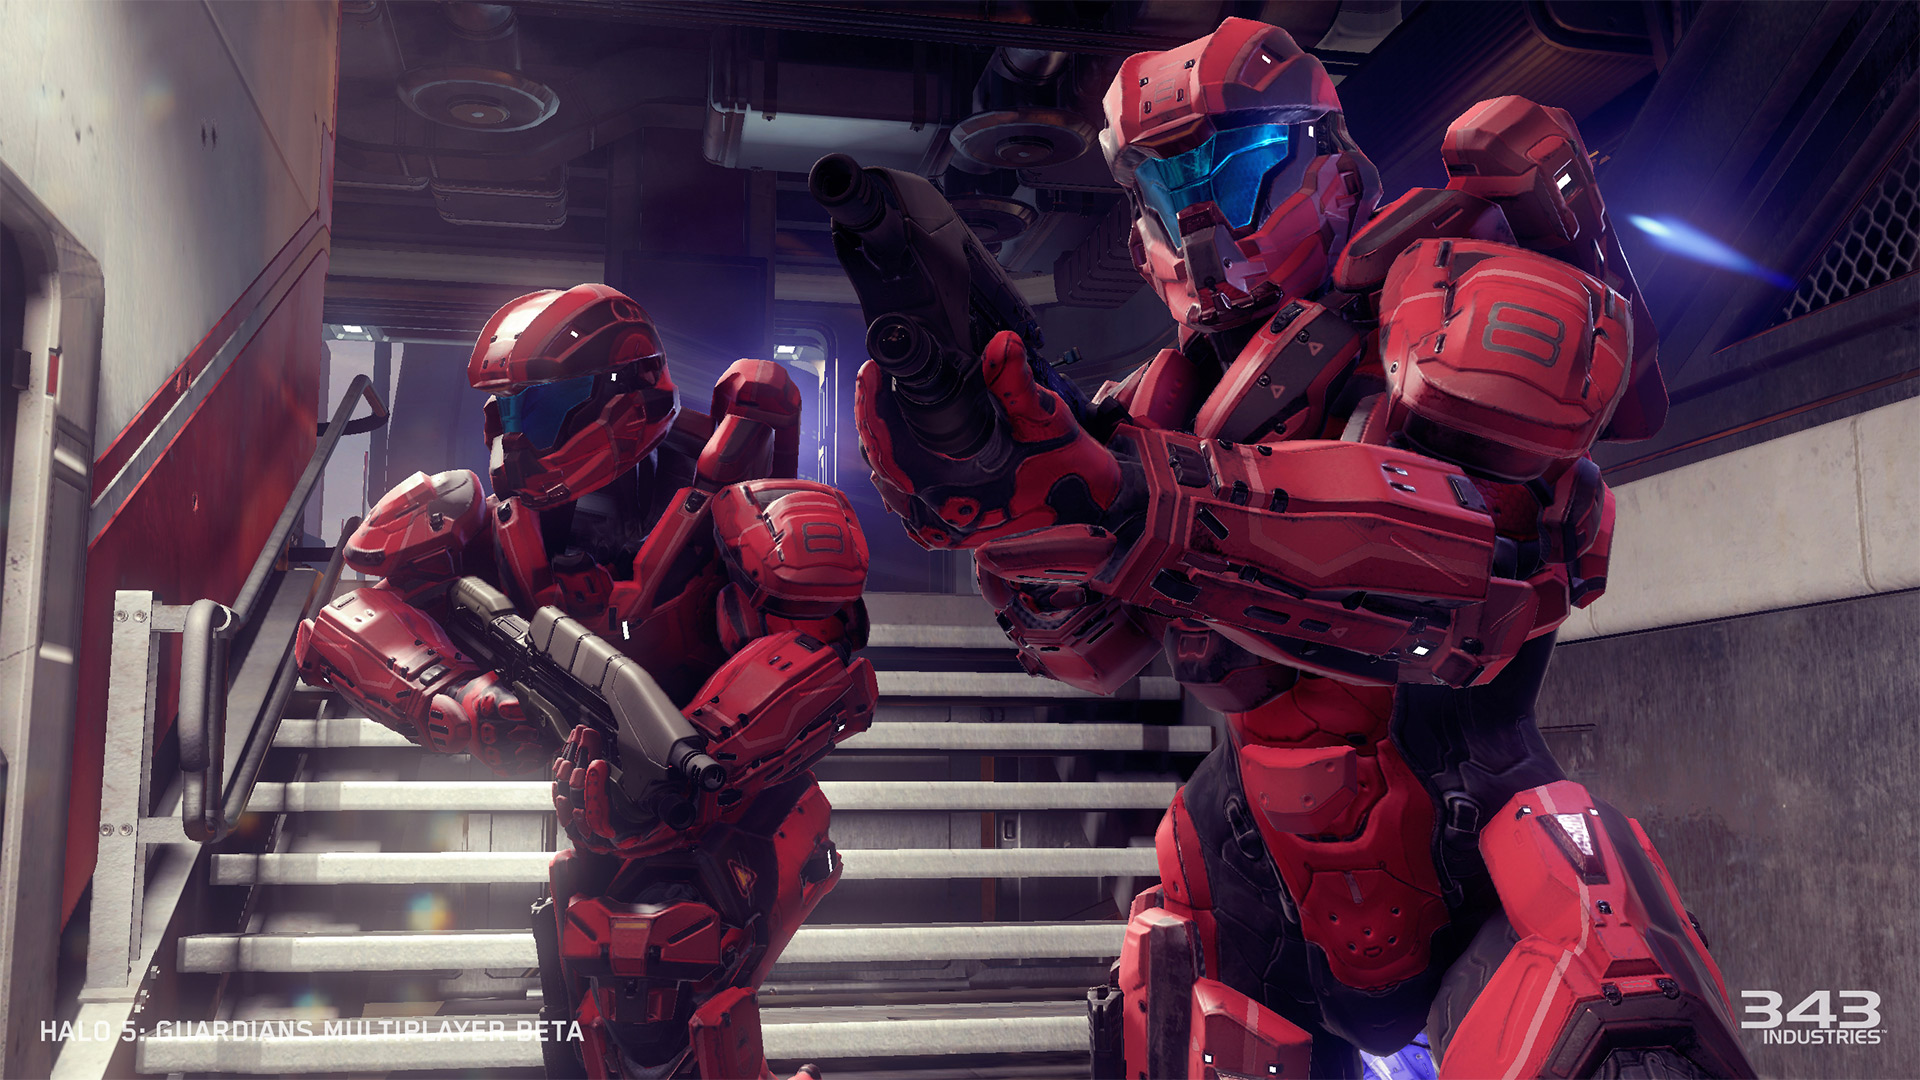 Immagine pubblicata in relazione al seguente contenuto: Microsoft rilascia la demo di Halo 5: Guardians in multiplayer beta | Nome immagine: news22040_Halo-5-Guardians-multiplayer-beta-screenshot_2.jpg